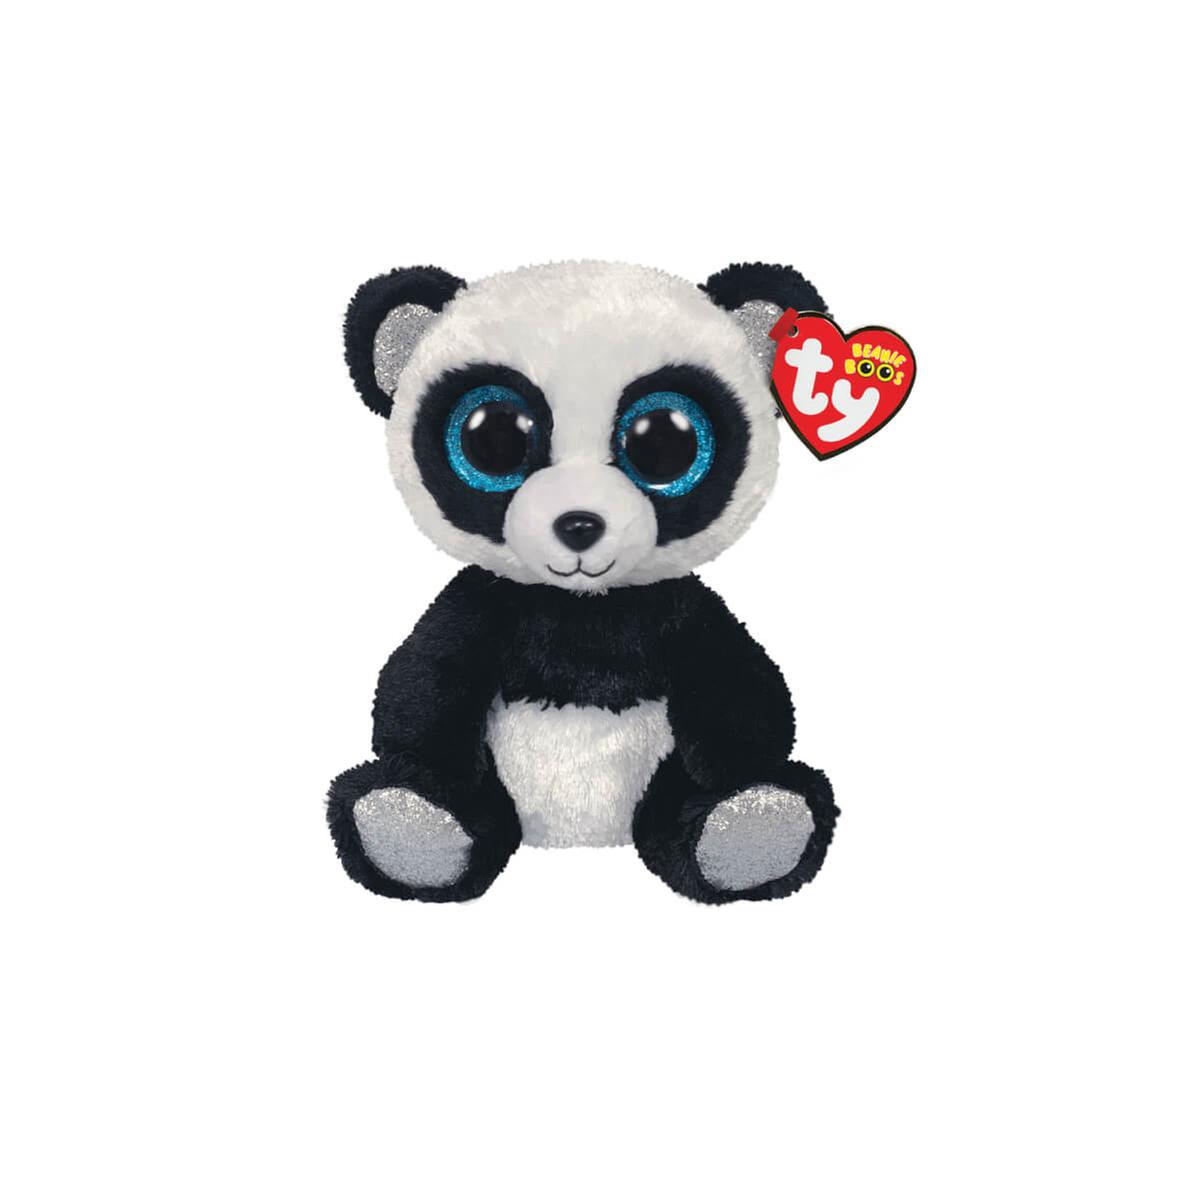 Beanie Boos - Bamboo el Panda - Peluche 15 cm | Ty | Toys"R"Us España